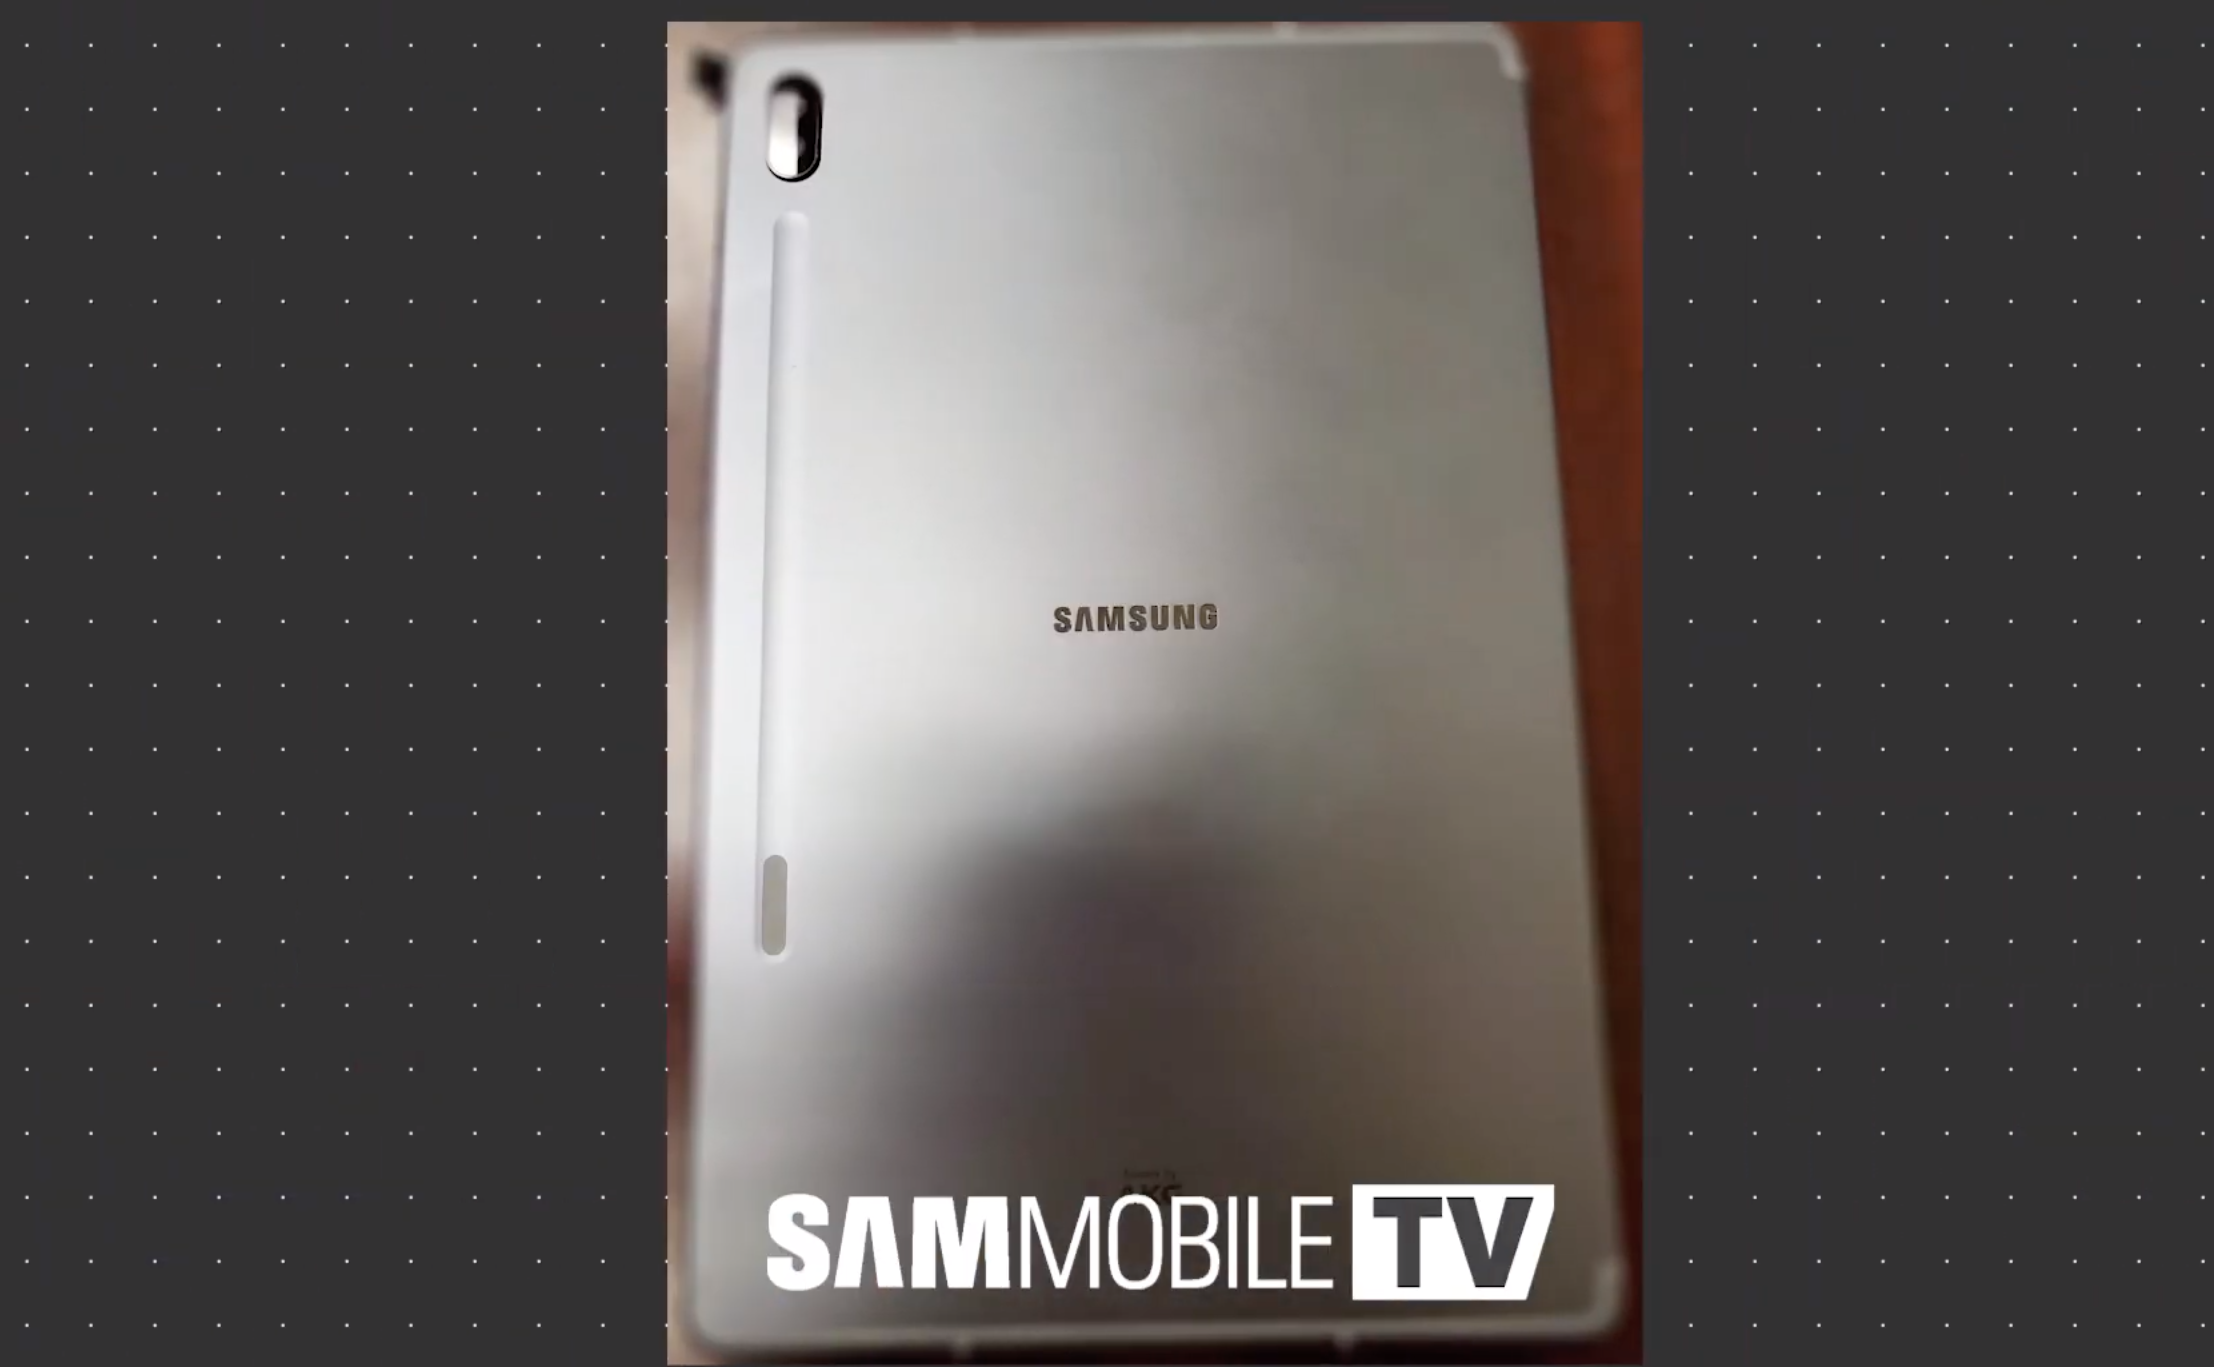 Samsung Galaxy Tab S6 zamiast Galaxy Tab S5 specyfikacja techniczna opinie plotki przecieki wycieki